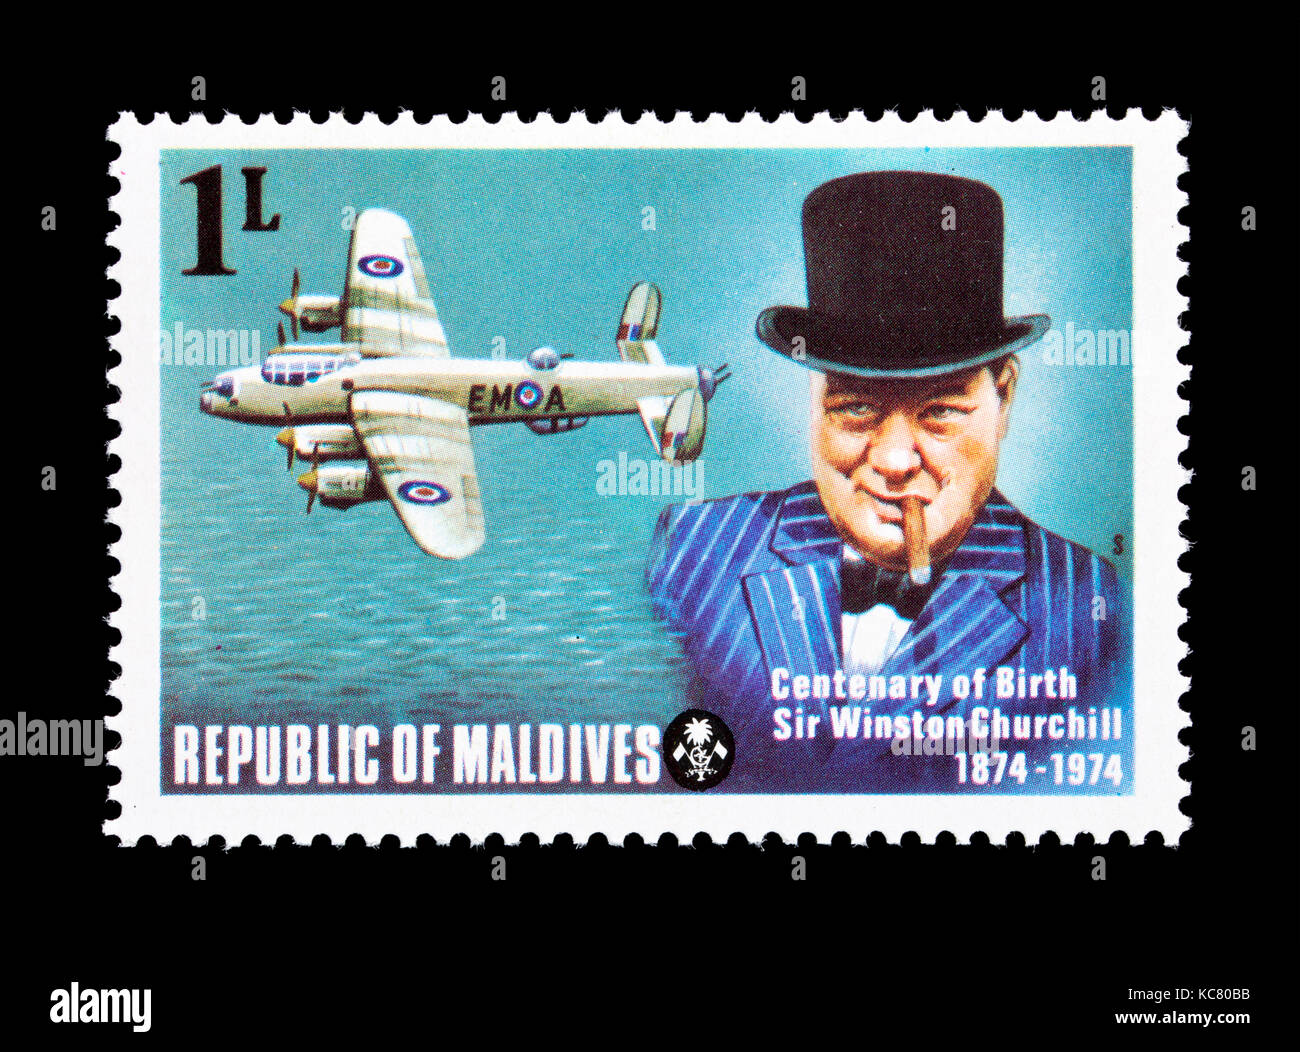 Timbre-poste des Maldives représentant Winston Churchill et une guerre mondiale 2 avion, centenaire de la naissance. Banque D'Images